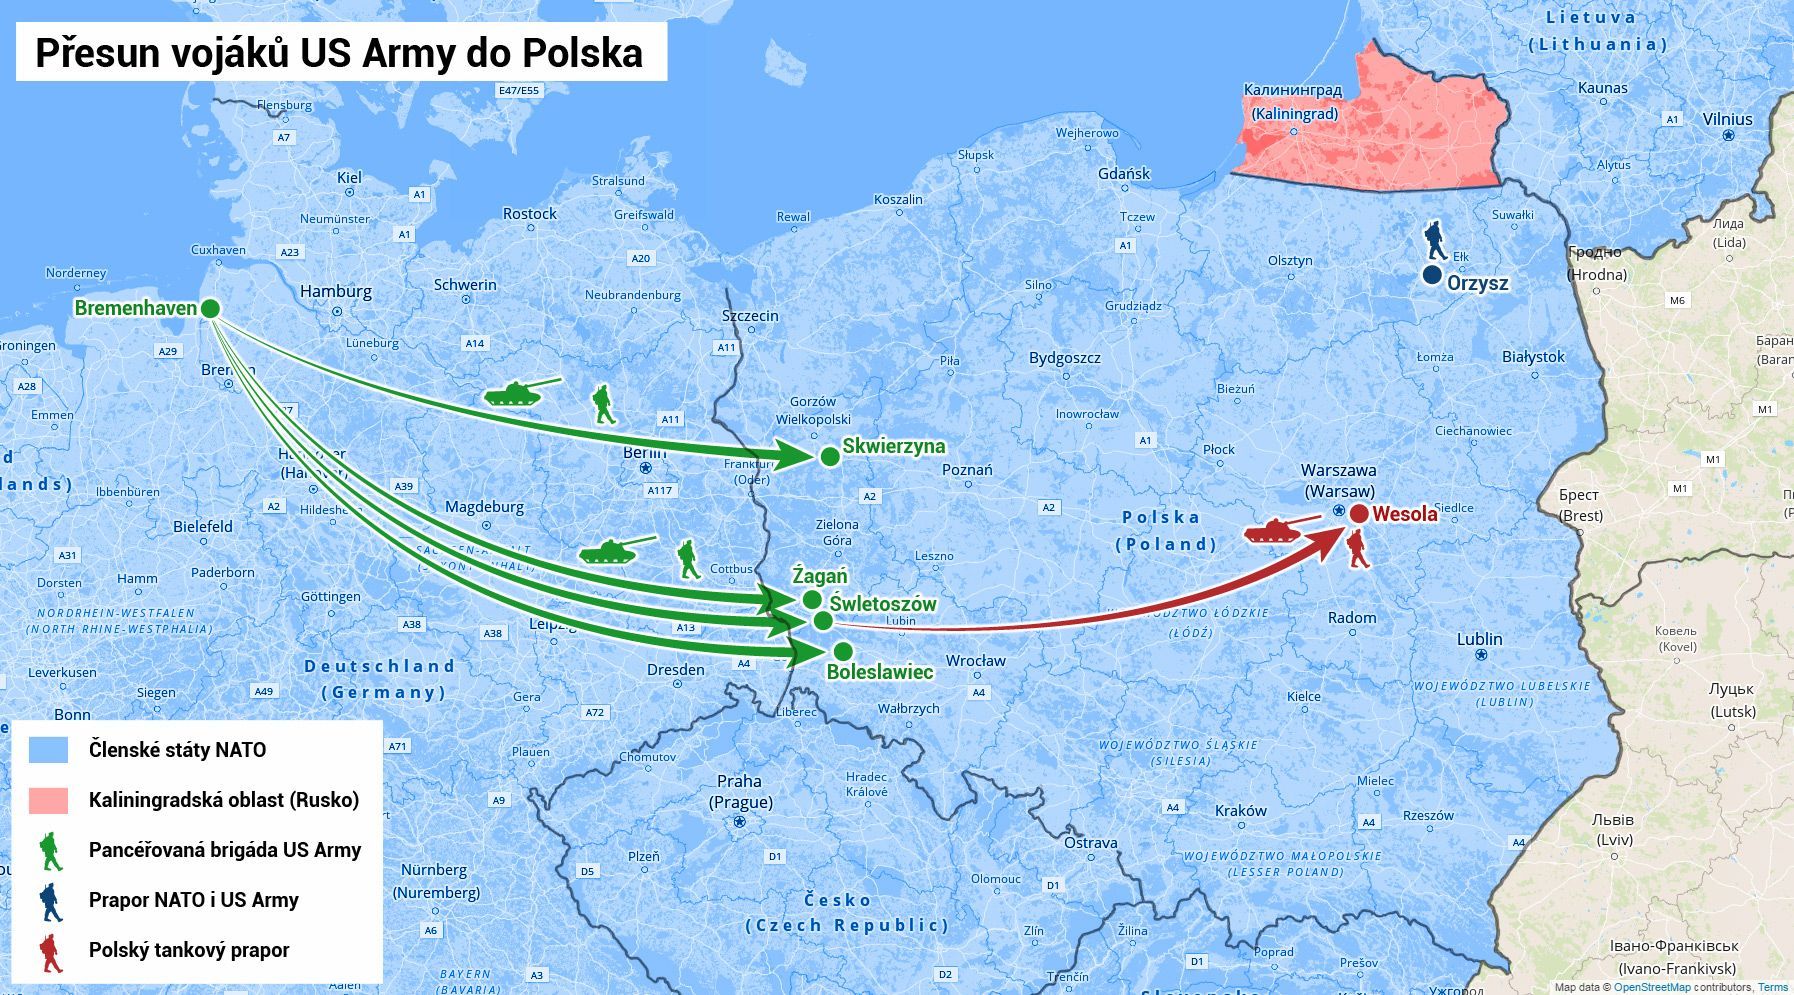 Přesun vojáků US Army do Polska - mapa